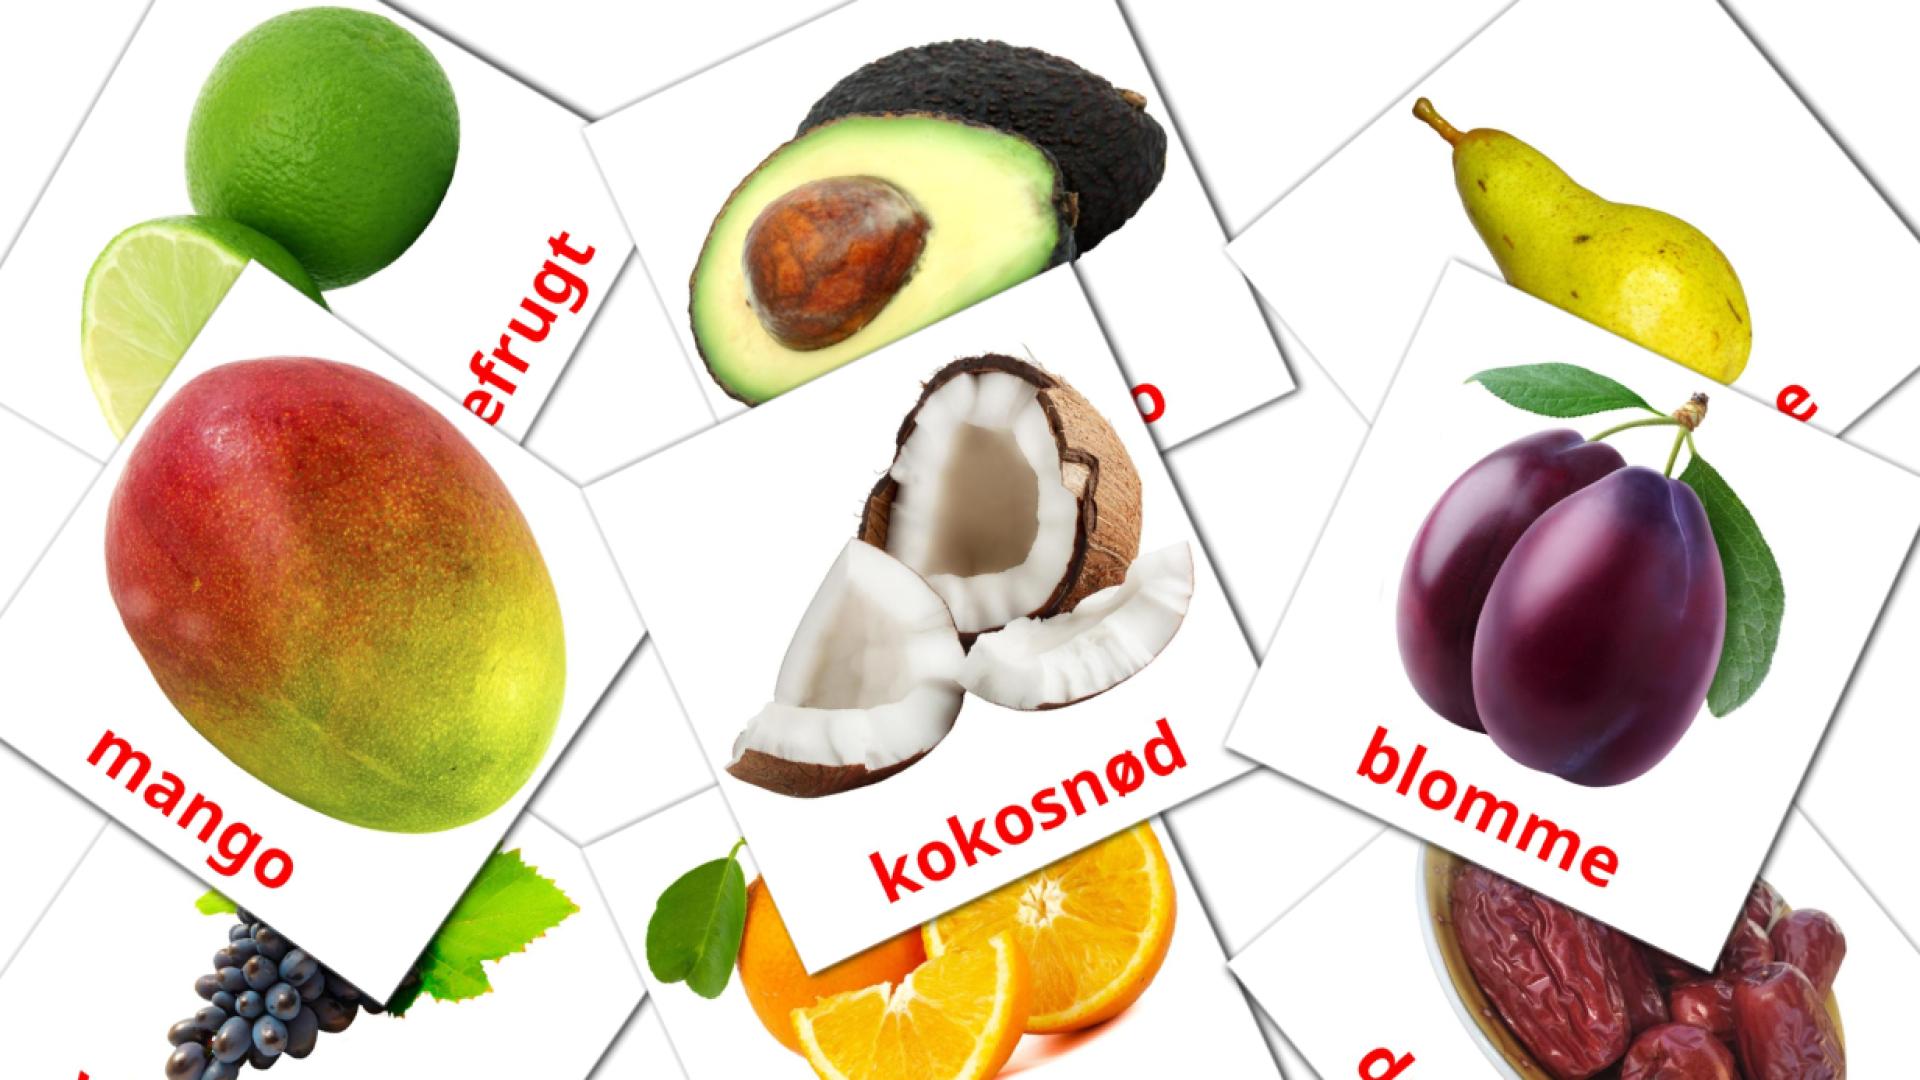 Bildkarten für Frugter